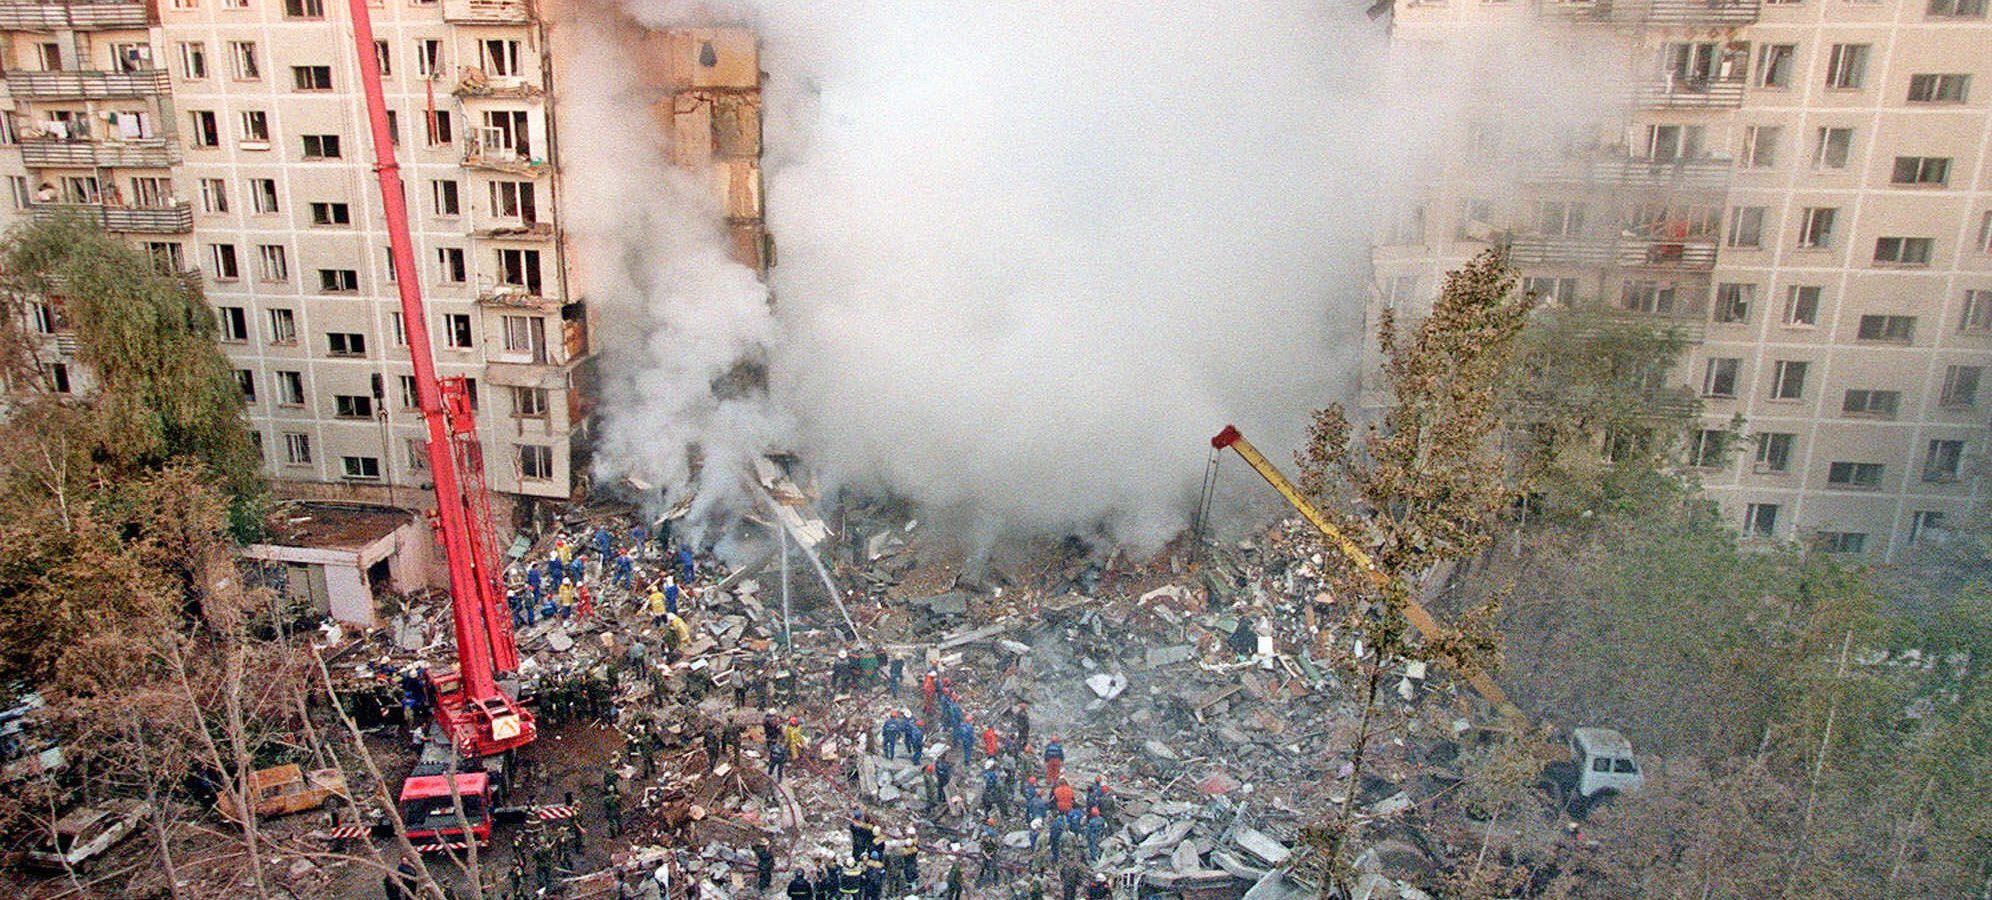 Сахарок теракт. Теракт 1999 года в Москве на улице Гурьянова. Взрыв дома на улице Гурьянова в Москве 1999. Теракт 9 сентября 1999 года в Москве.